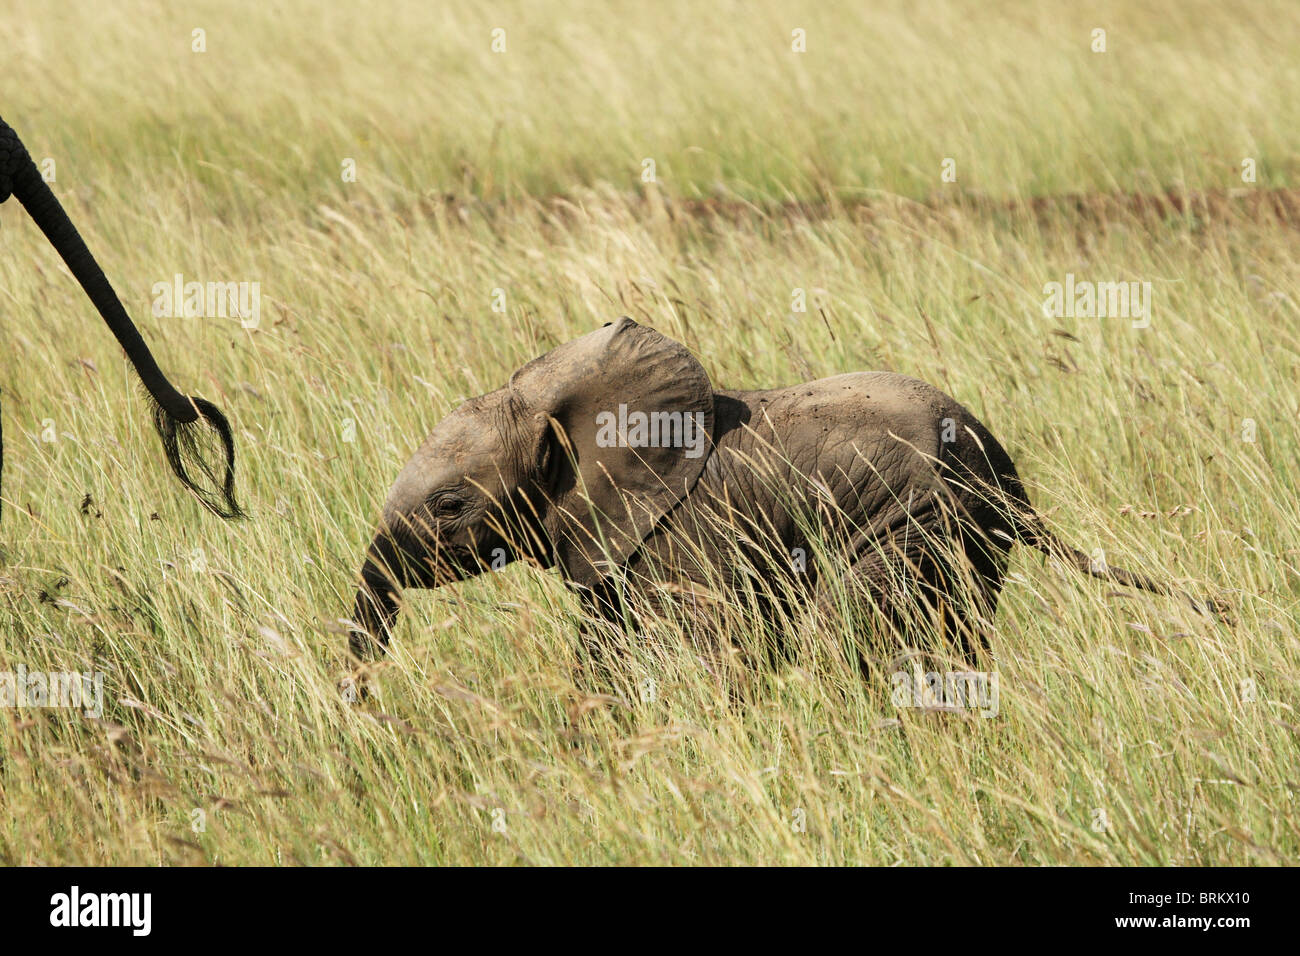 Detrás de la pantorrilla del elefante a través de pasto largo detrás de la madre Foto de stock